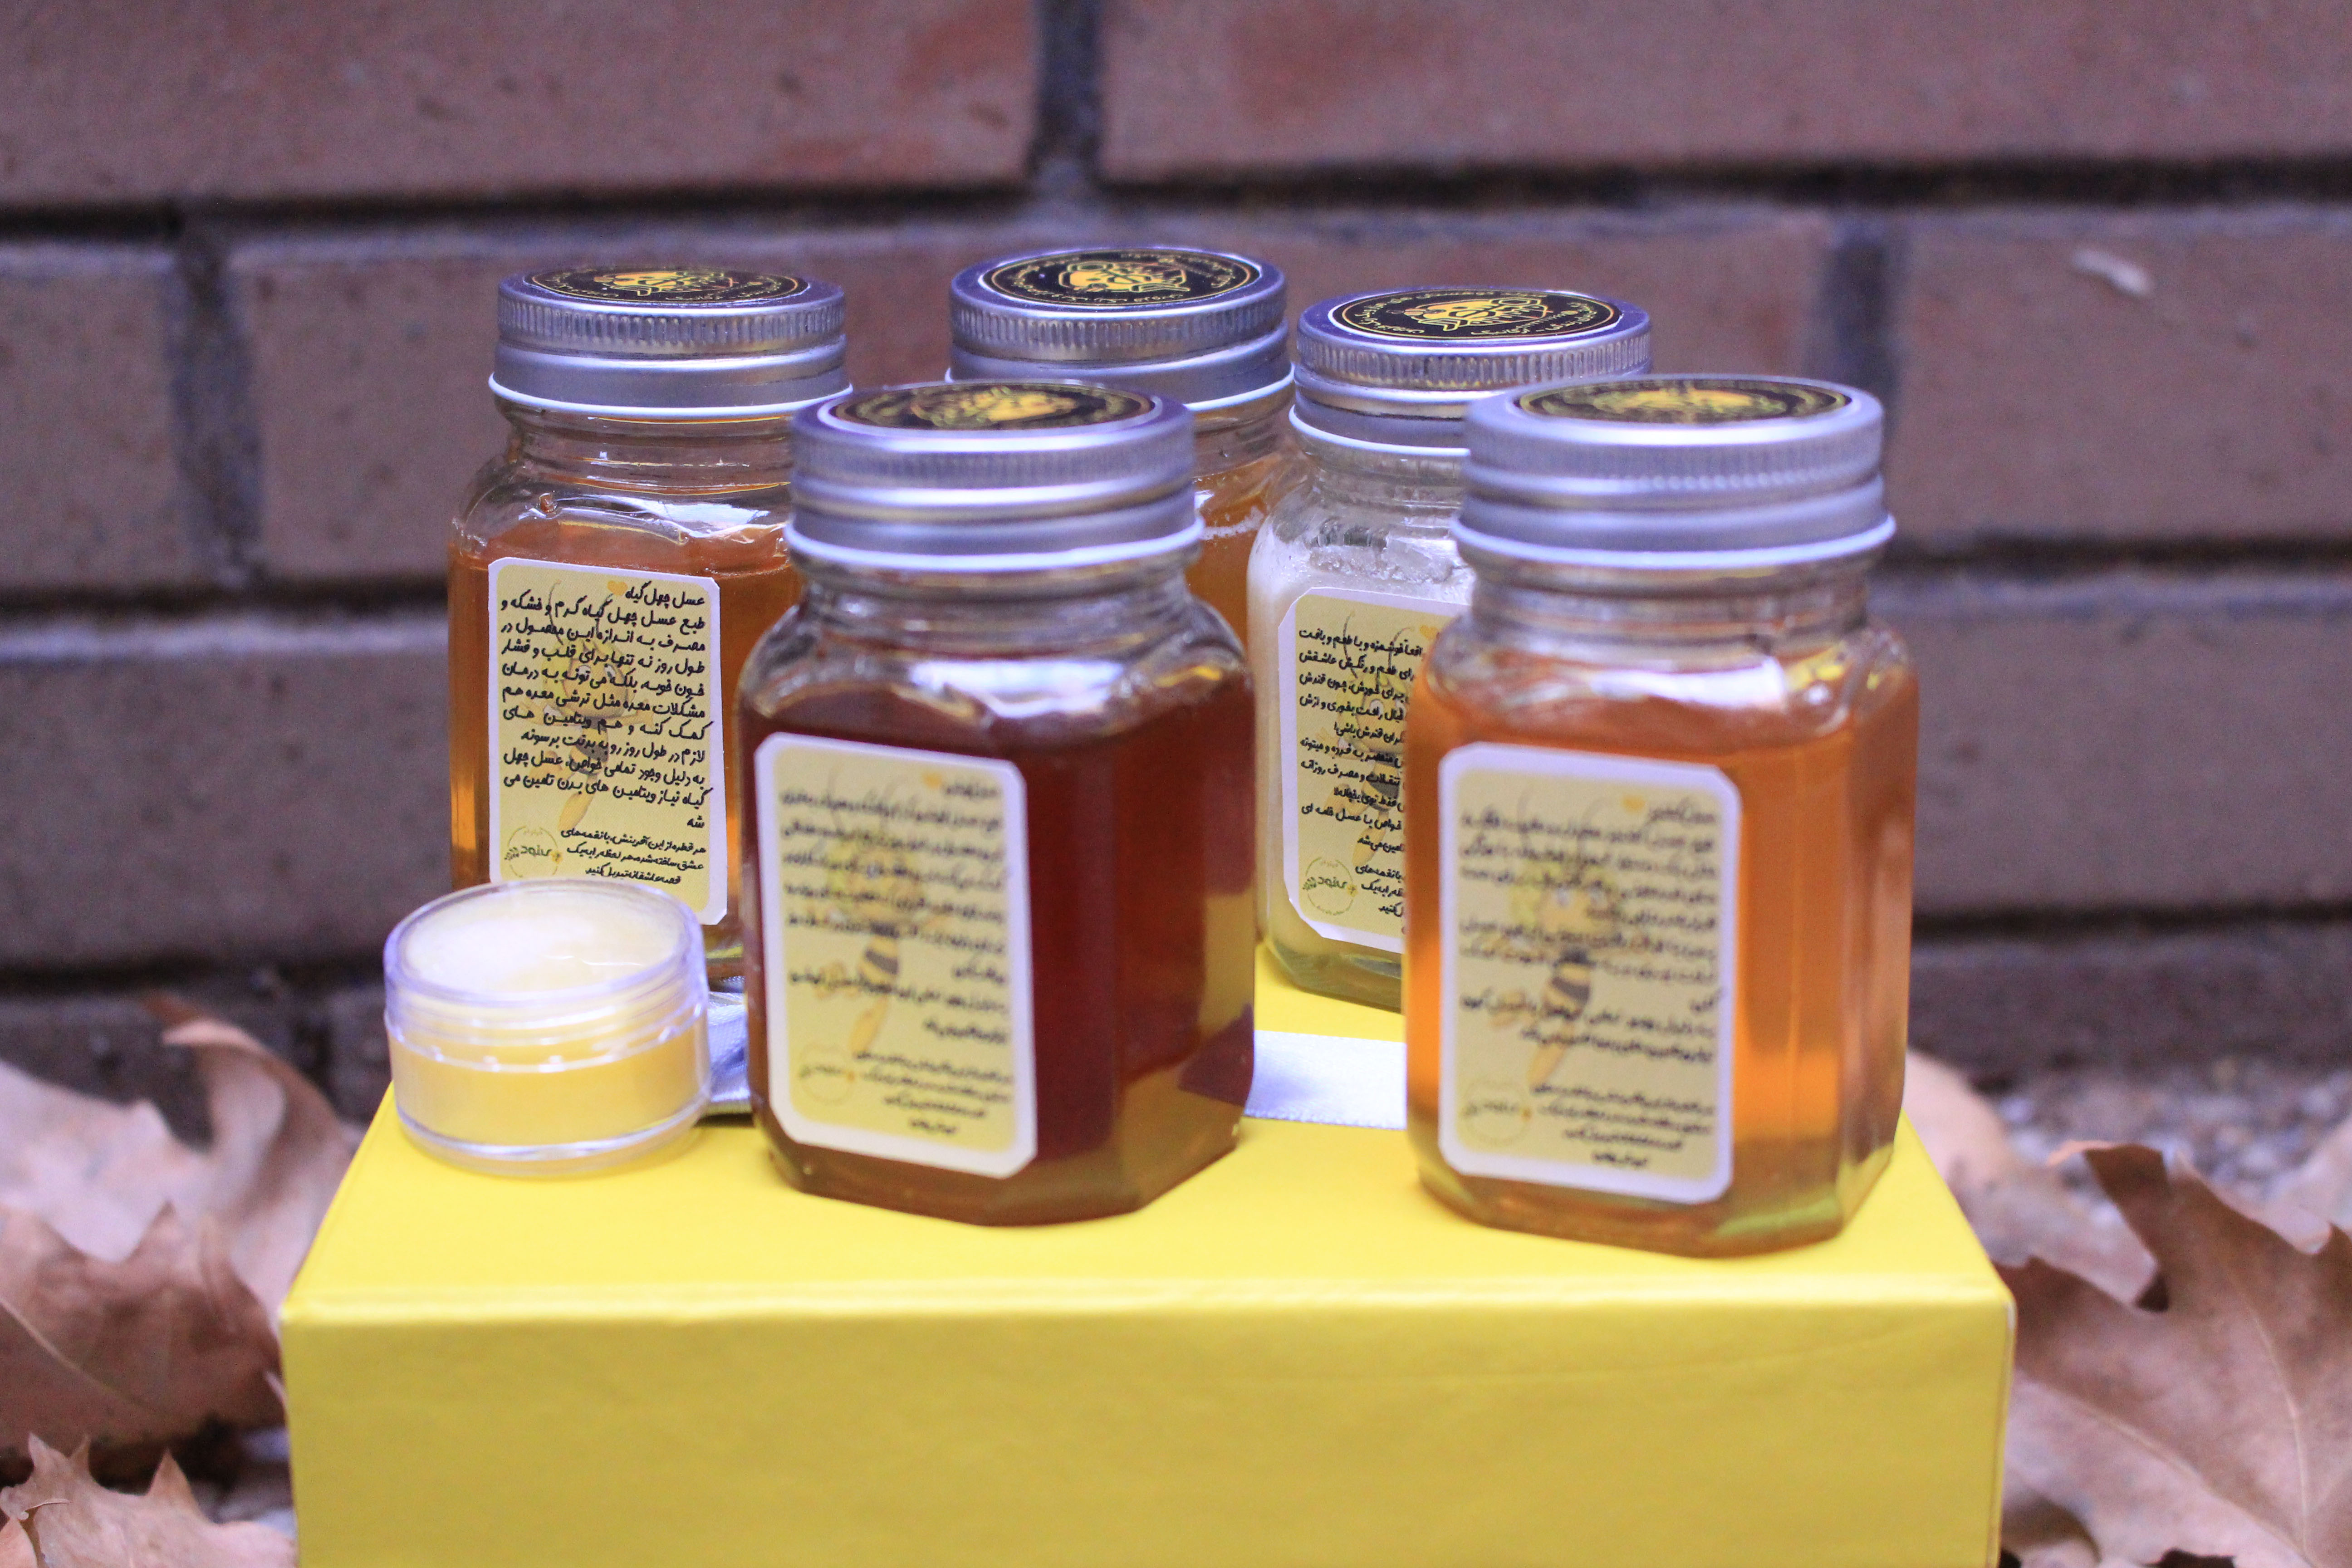 پک سلامتی هدیه عیدانه عسل های مجموعه مینودر شامل: عسل گون، عسل گشنیز، عسل آویشن، عسل چهل گیاه، عسل خامه ای هر کدام صد گرمی + ده گرم ژل رویال ایرانی درجه یک مینودر + 100 گرم گرده گل، قاشق عسل، شمع موم زنبور عسل و اسماج + جعبه و بسته بندی خاص